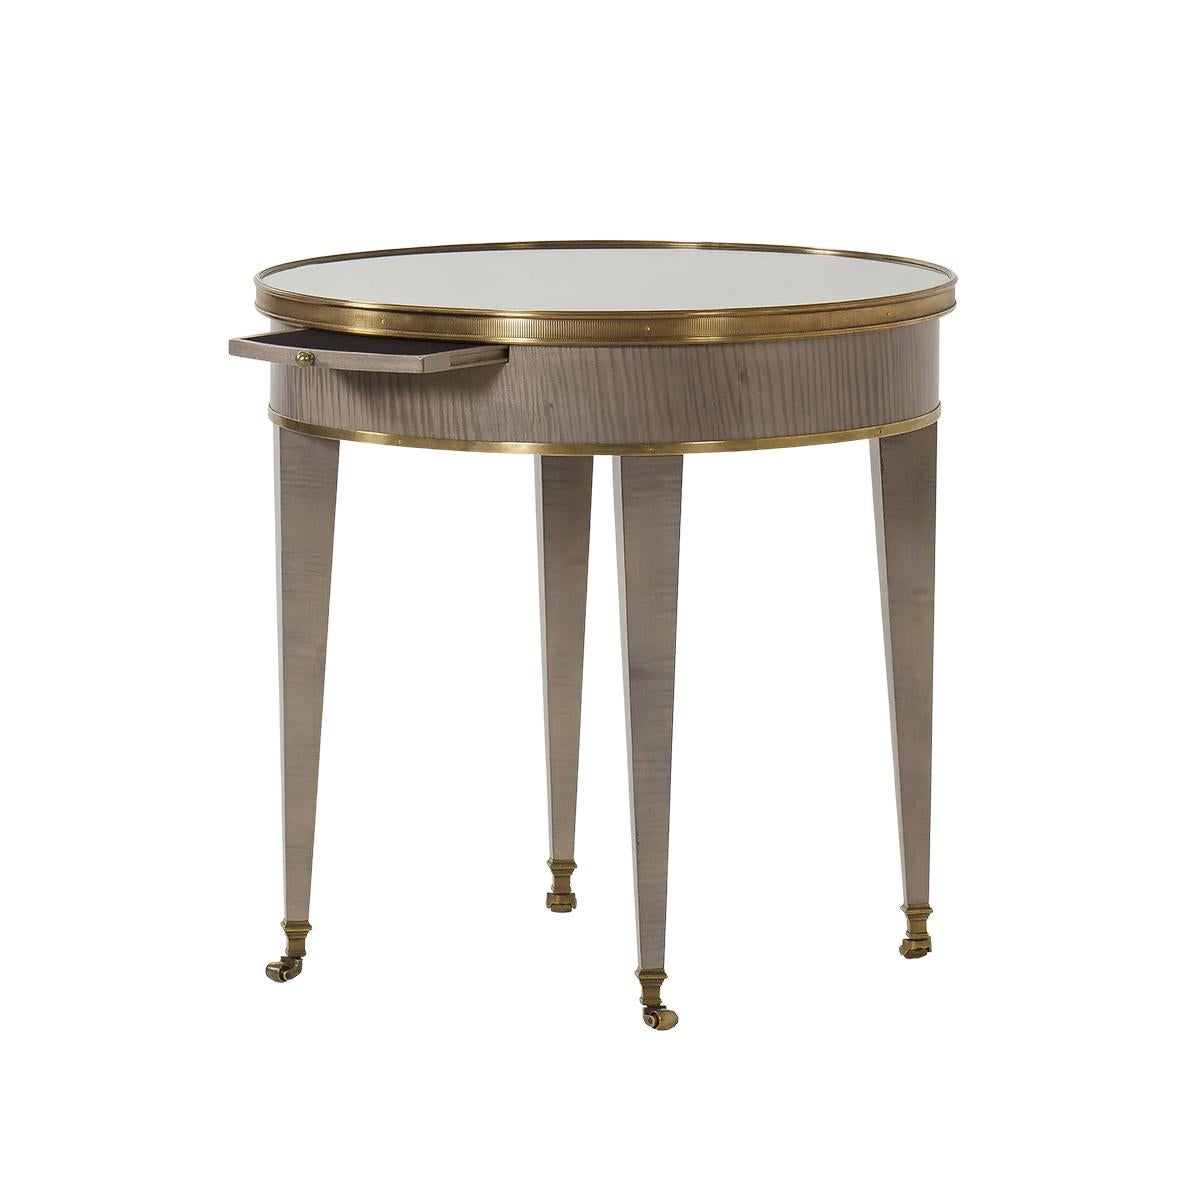 Table d'appoint ronde moderne néo classique. Le style de cette table est inspiré d'une table Bouillotte Louis XVI française du XVIIIe siècle. Il est doté d'un plateau en miroir, d'une glissière pour bougie, d'un temps en laiton, d'un bois exotique